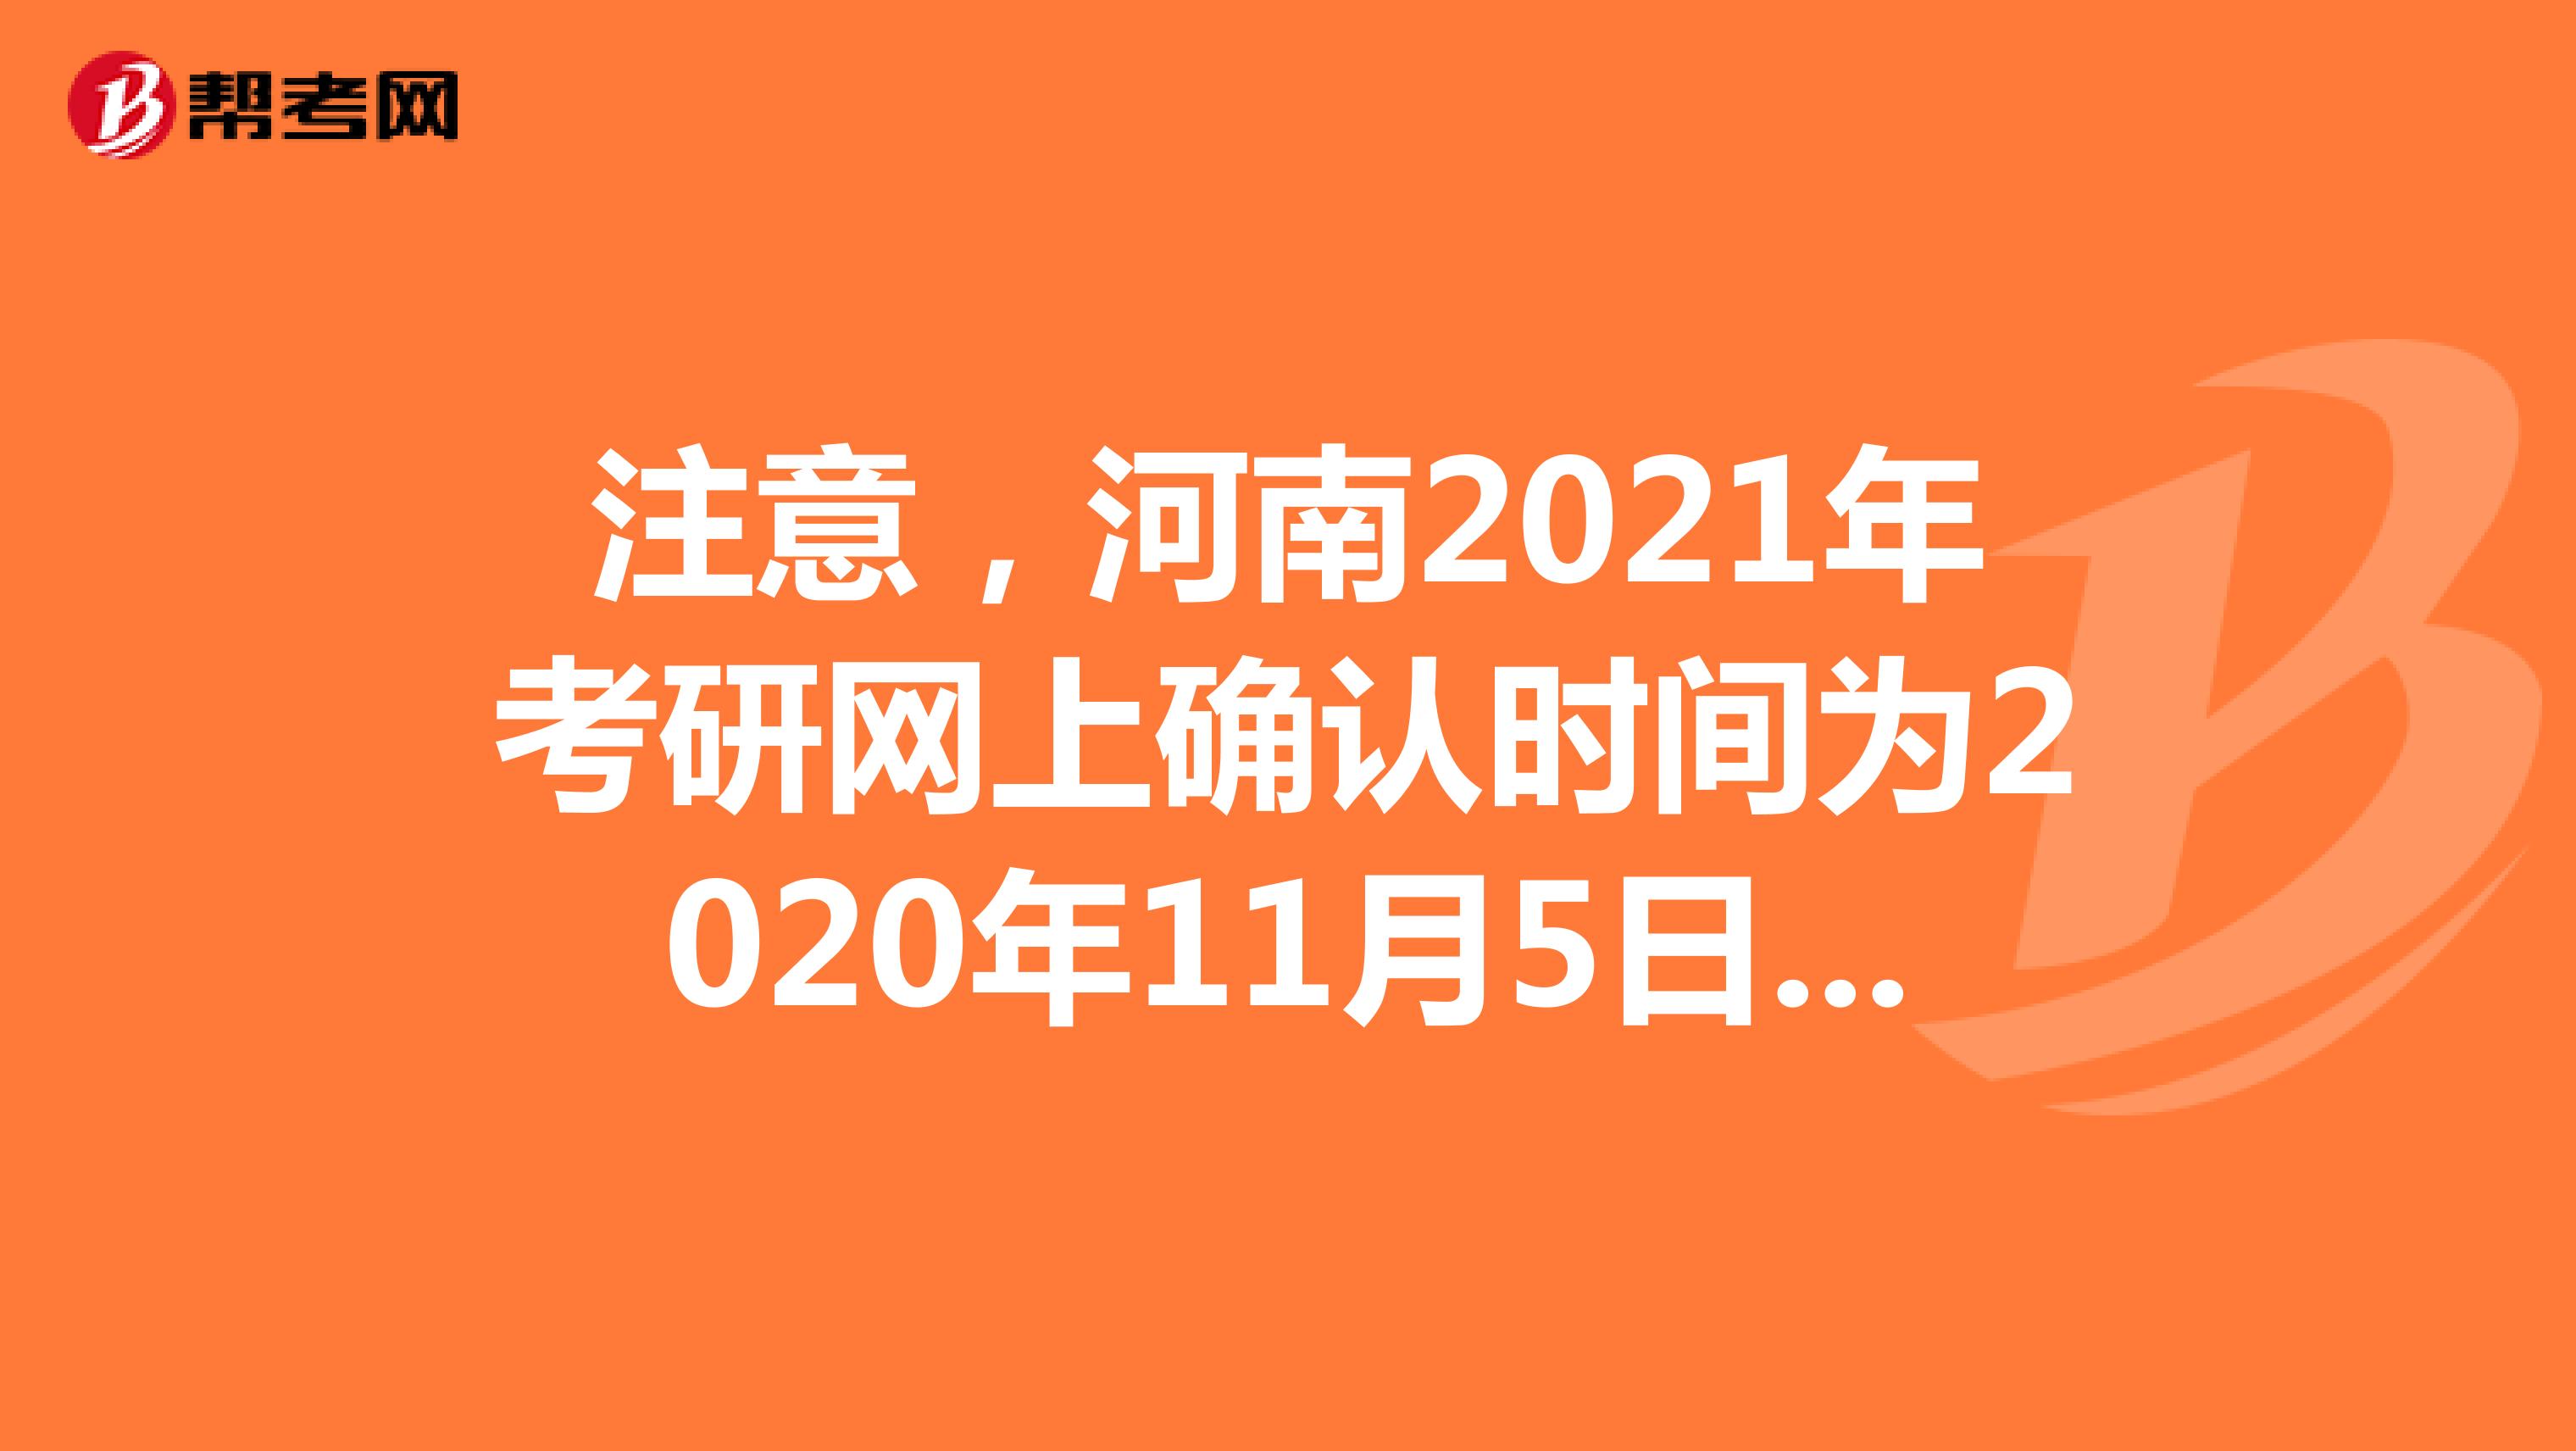 注意，河南2021年考研网上确认时间为2020年11月5日至9日